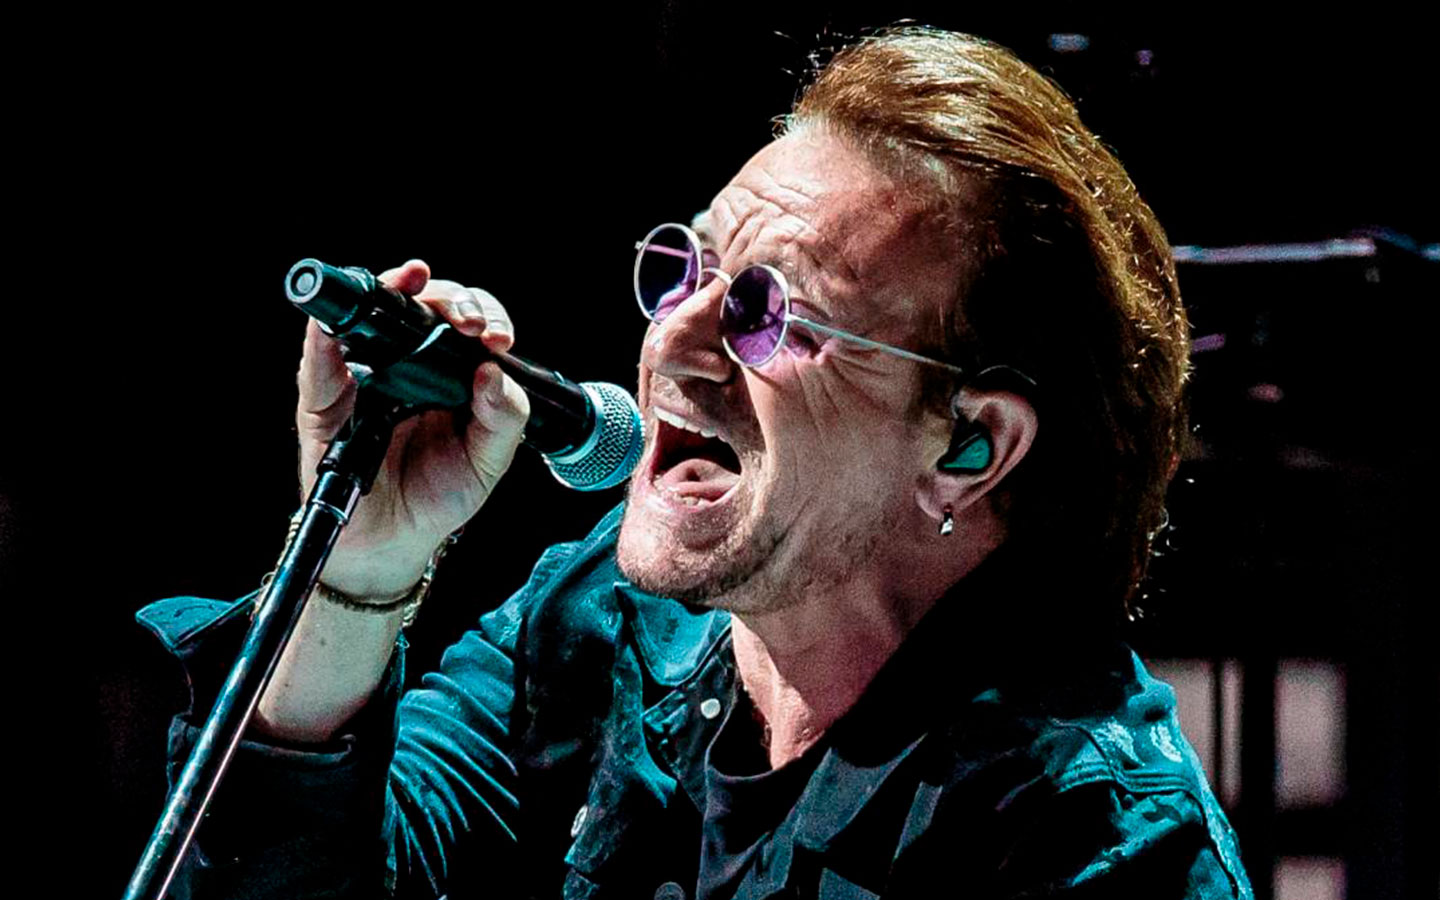 Celebremos los 62 años de Bono Vox, líder de U2